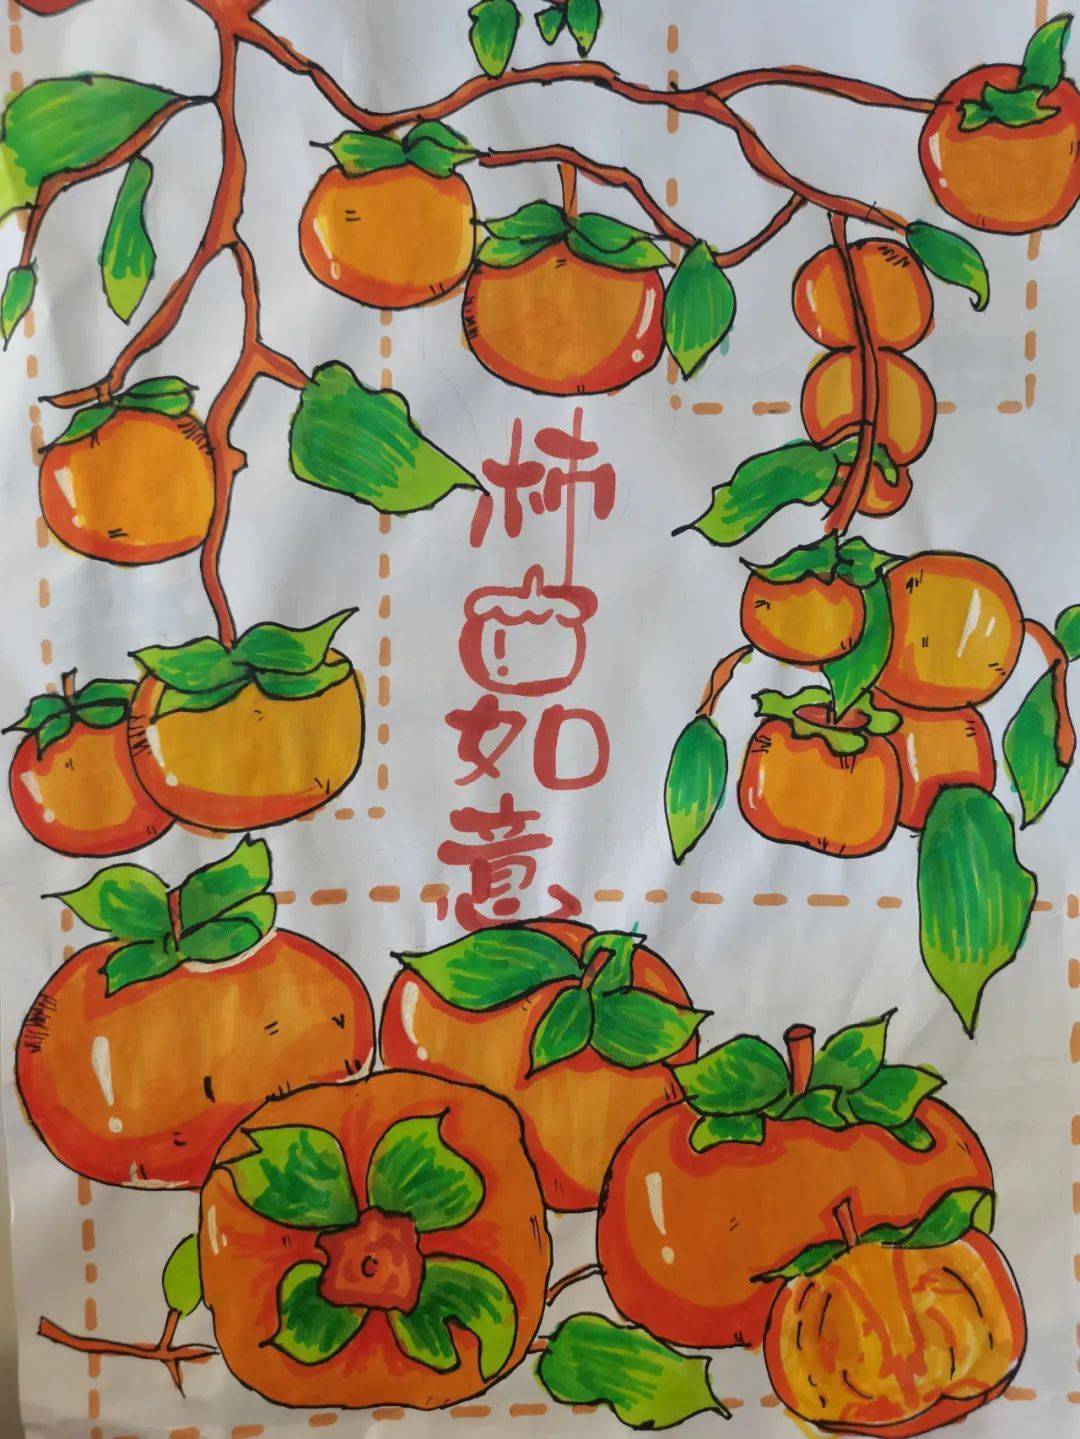 学生制作的柿子知识博览手抄报,介绍柿子生长过程,食用禁忌,文化寓意